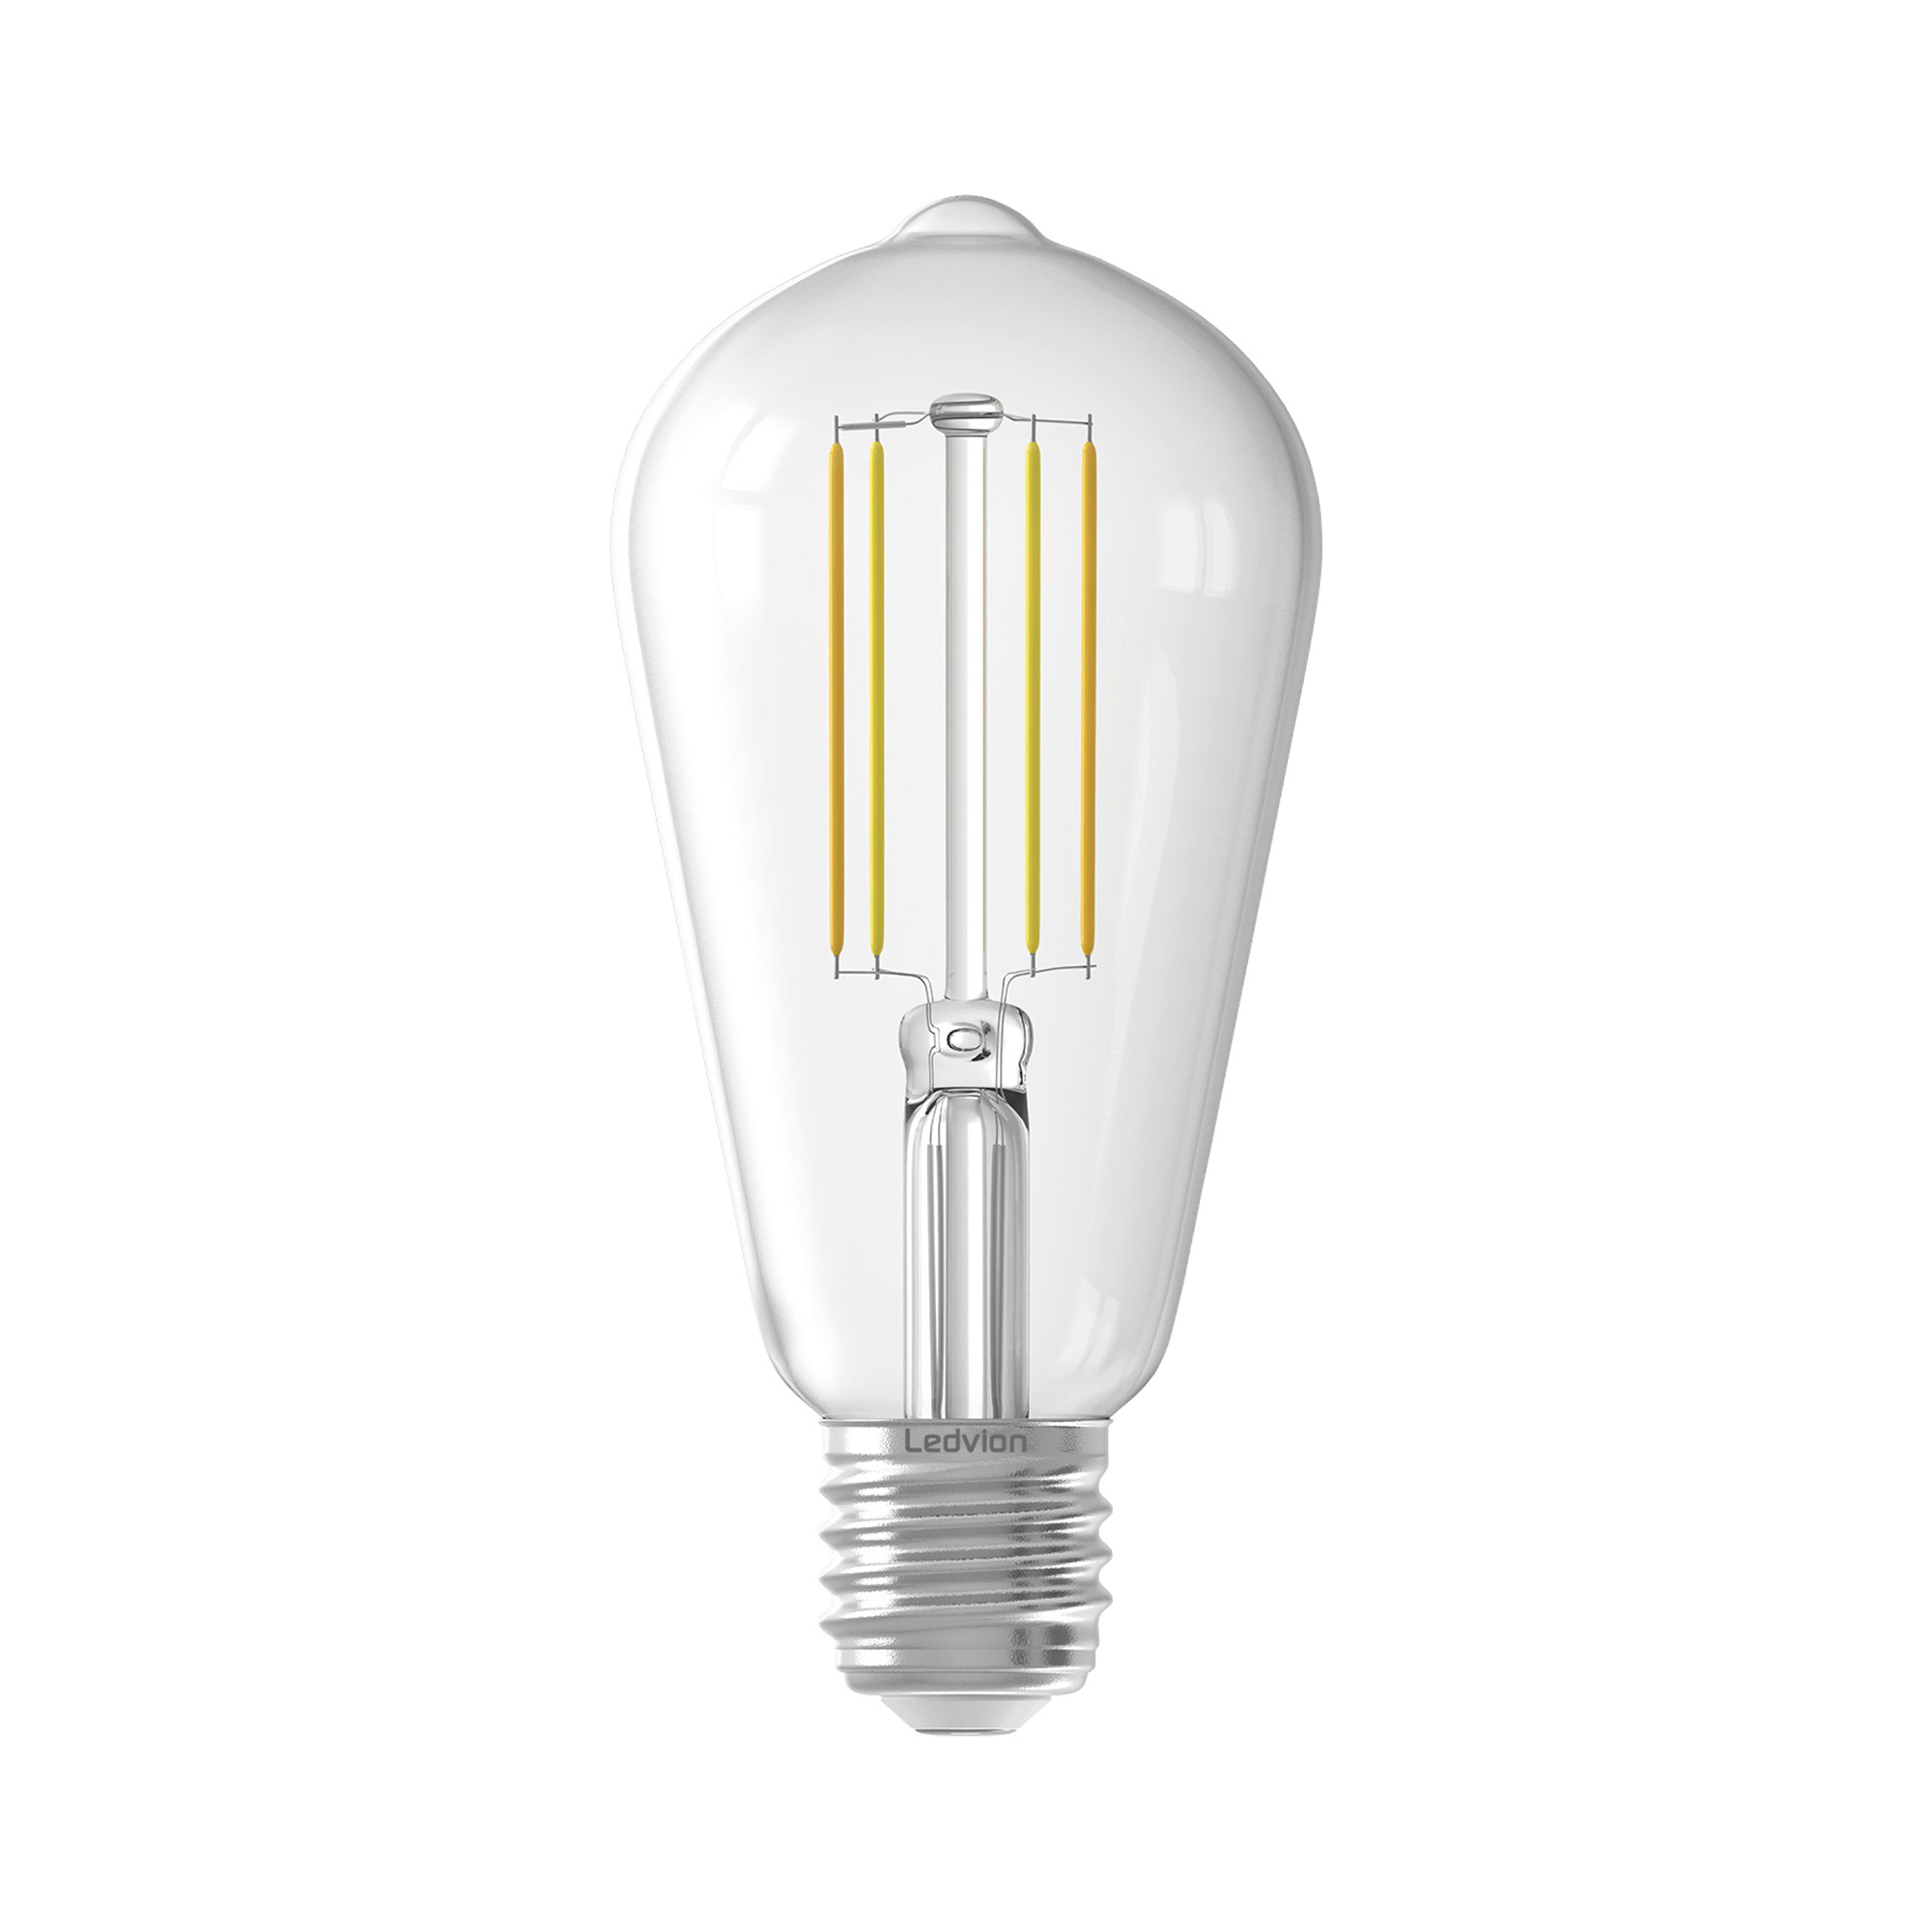 10x Ampoule LED Ledvion E27 - Dimmable - 8.8W - 6500K - 806 Lumen